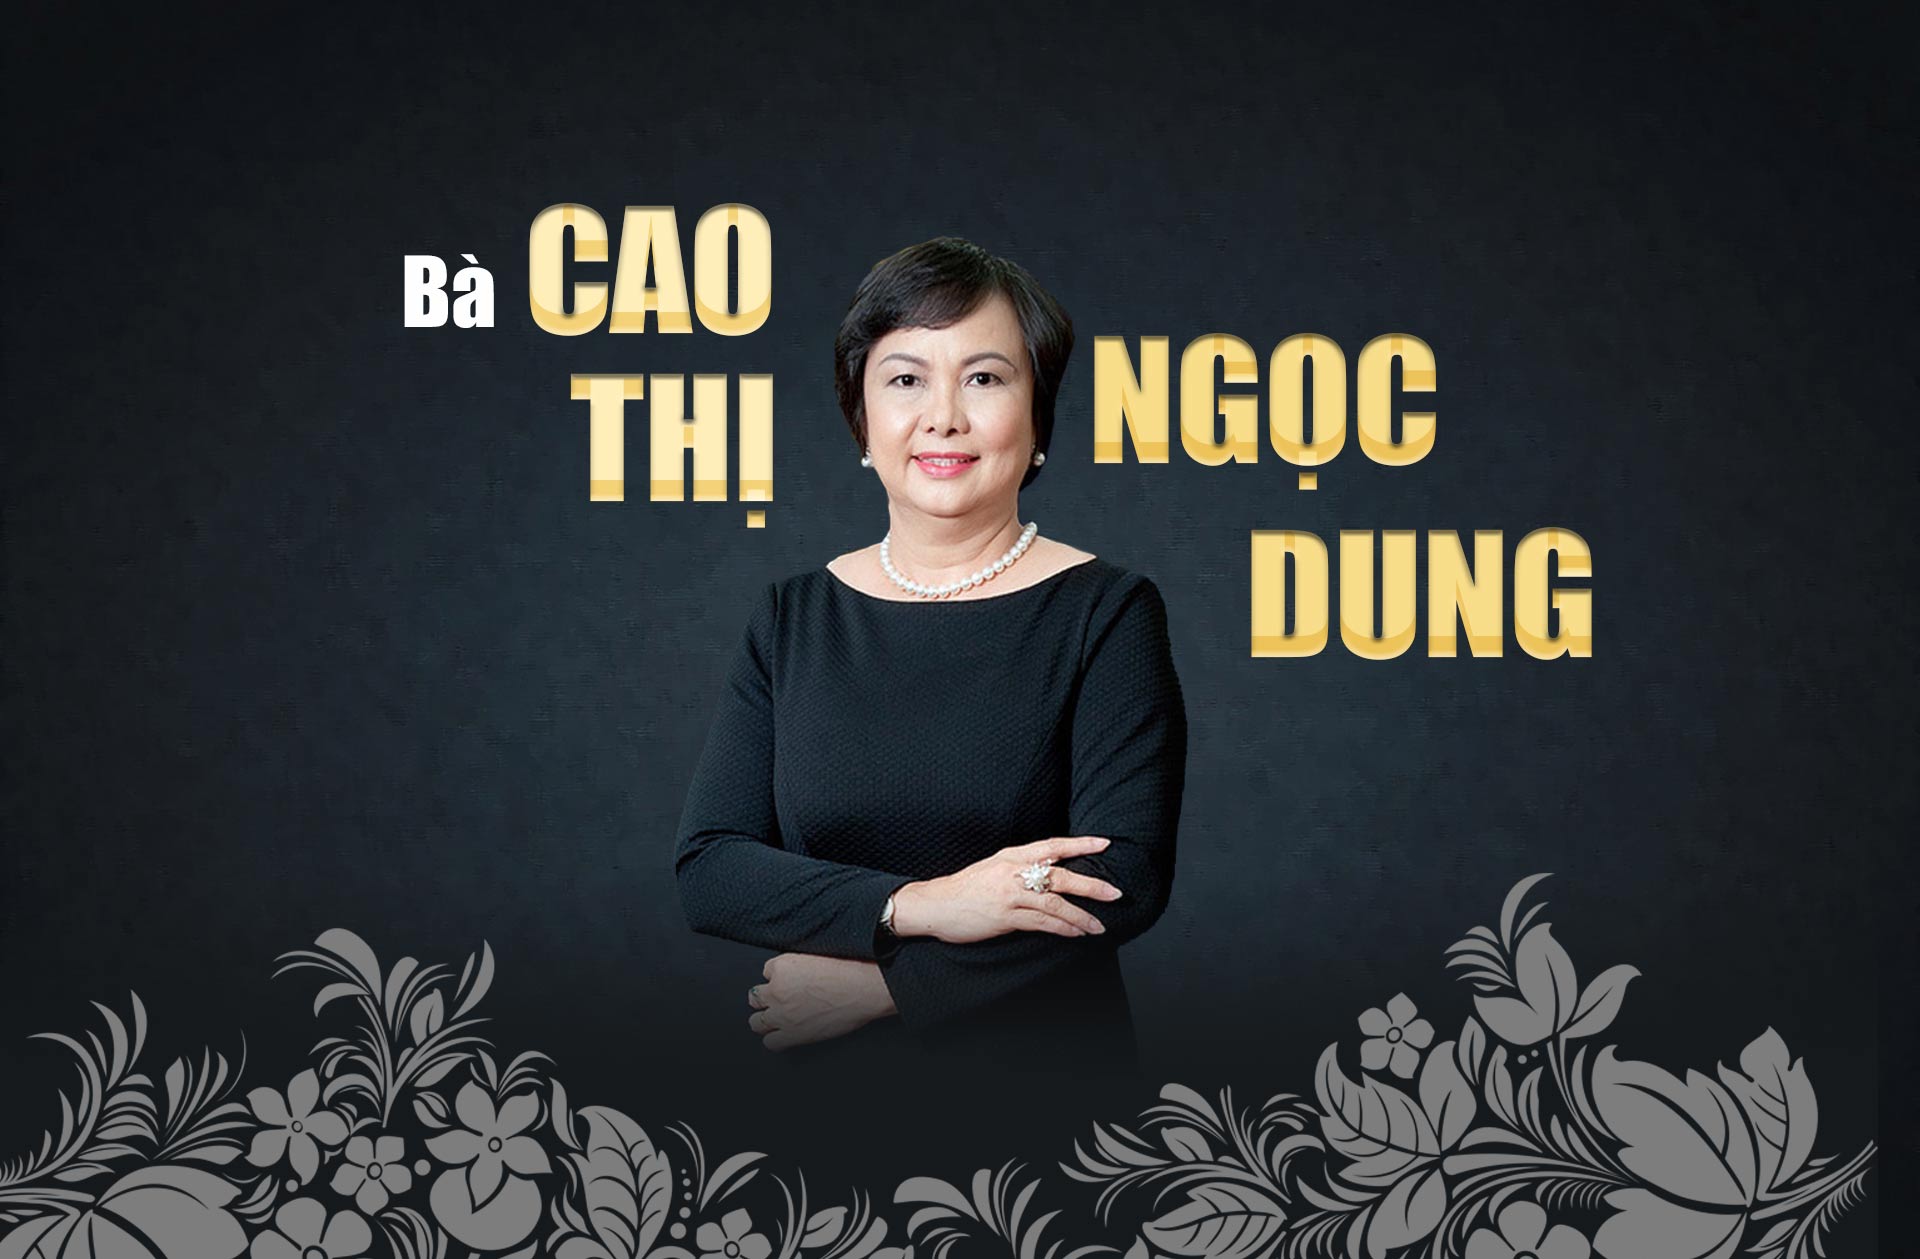 10 phụ nữ Việt gây choáng bởi sự giàu có, giỏi giang và quyền lực - 27